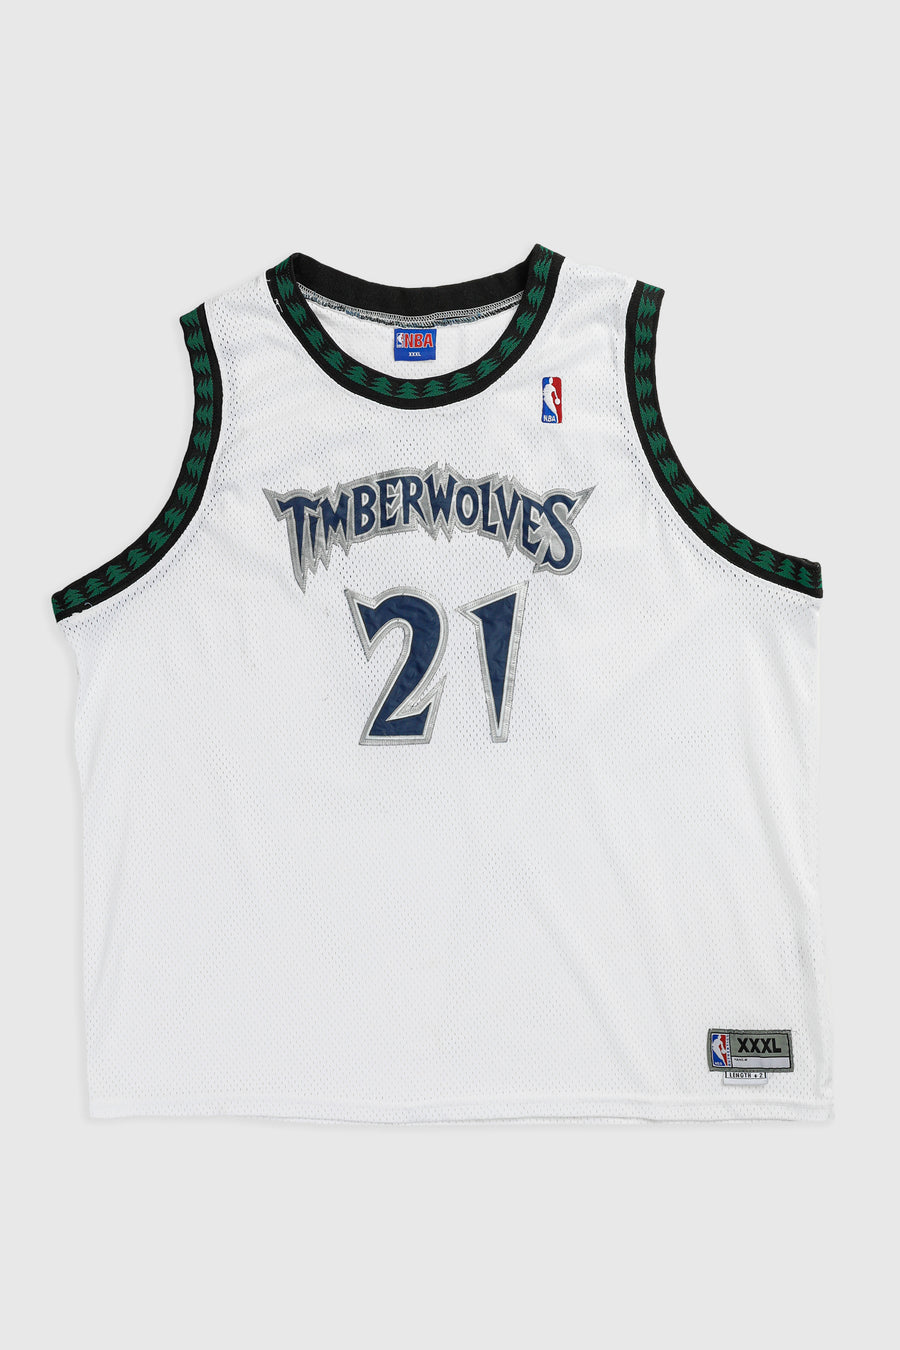 Vintage Minnesota Timberwolves NBA Jersey - XXXL